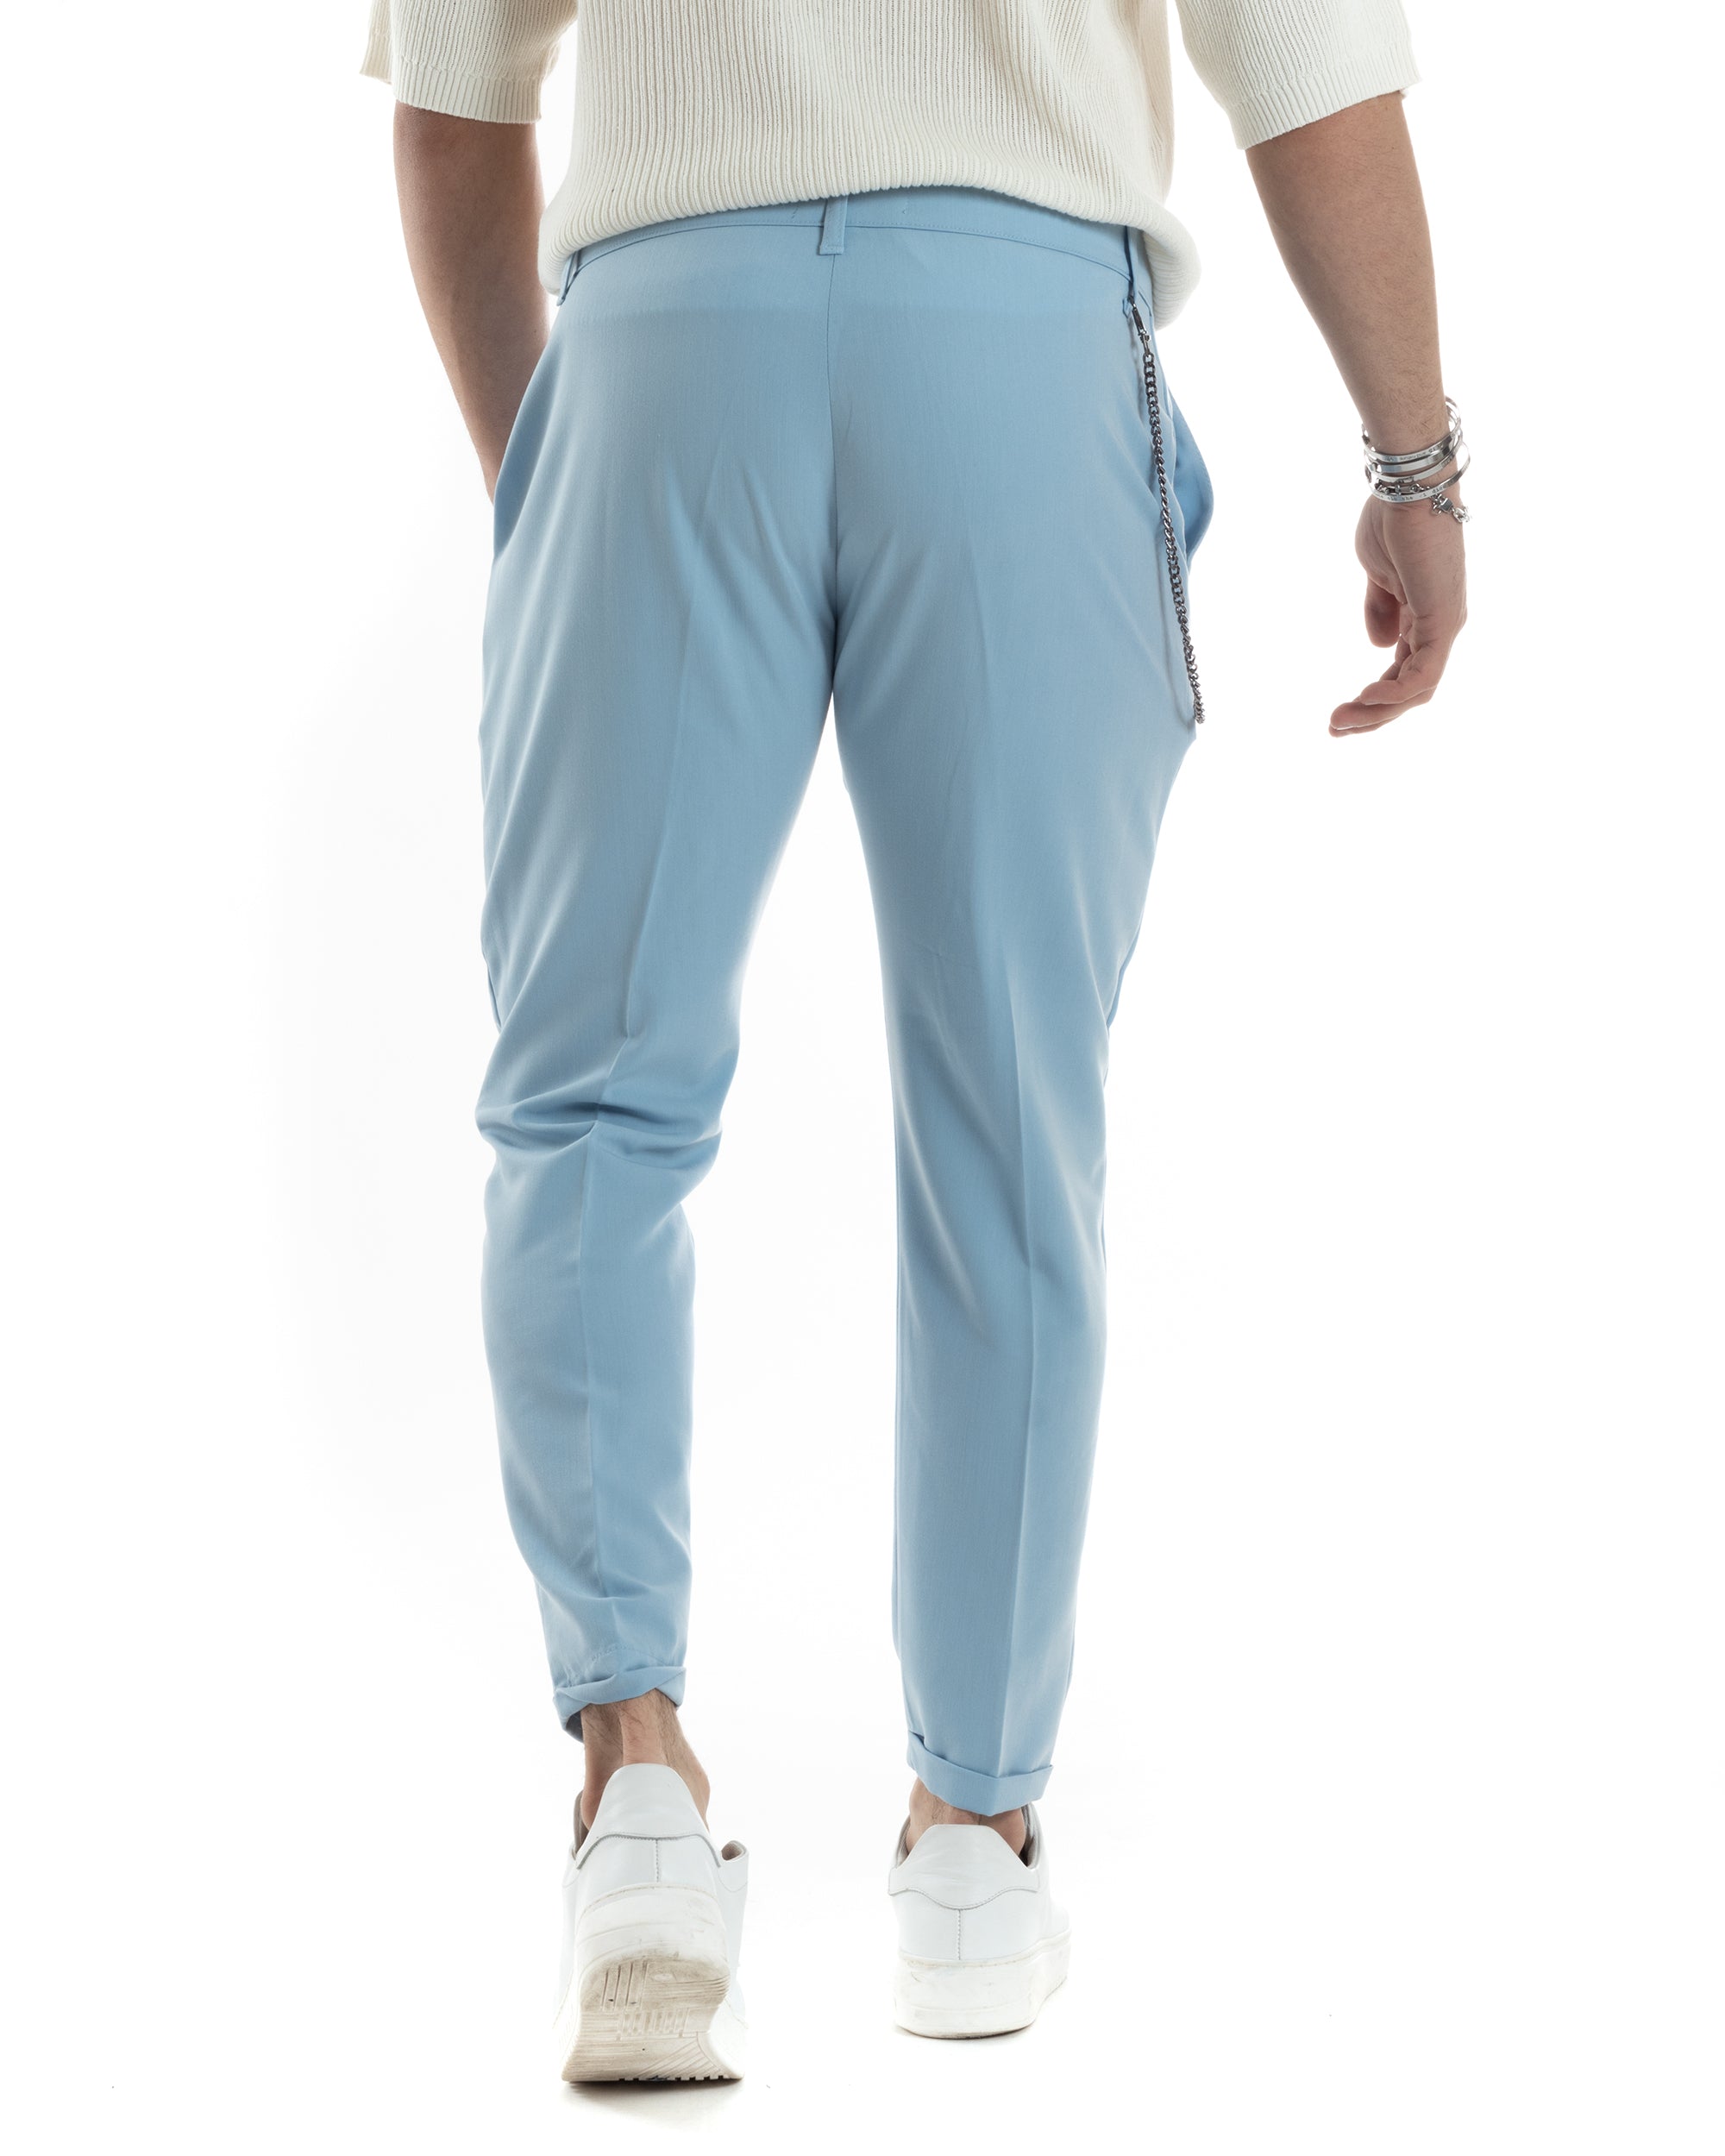 Pantaloni Uomo Viscosa Tasca America Classico Abbottonatura Allungata Casual Celeste GIOSAL-P6044A